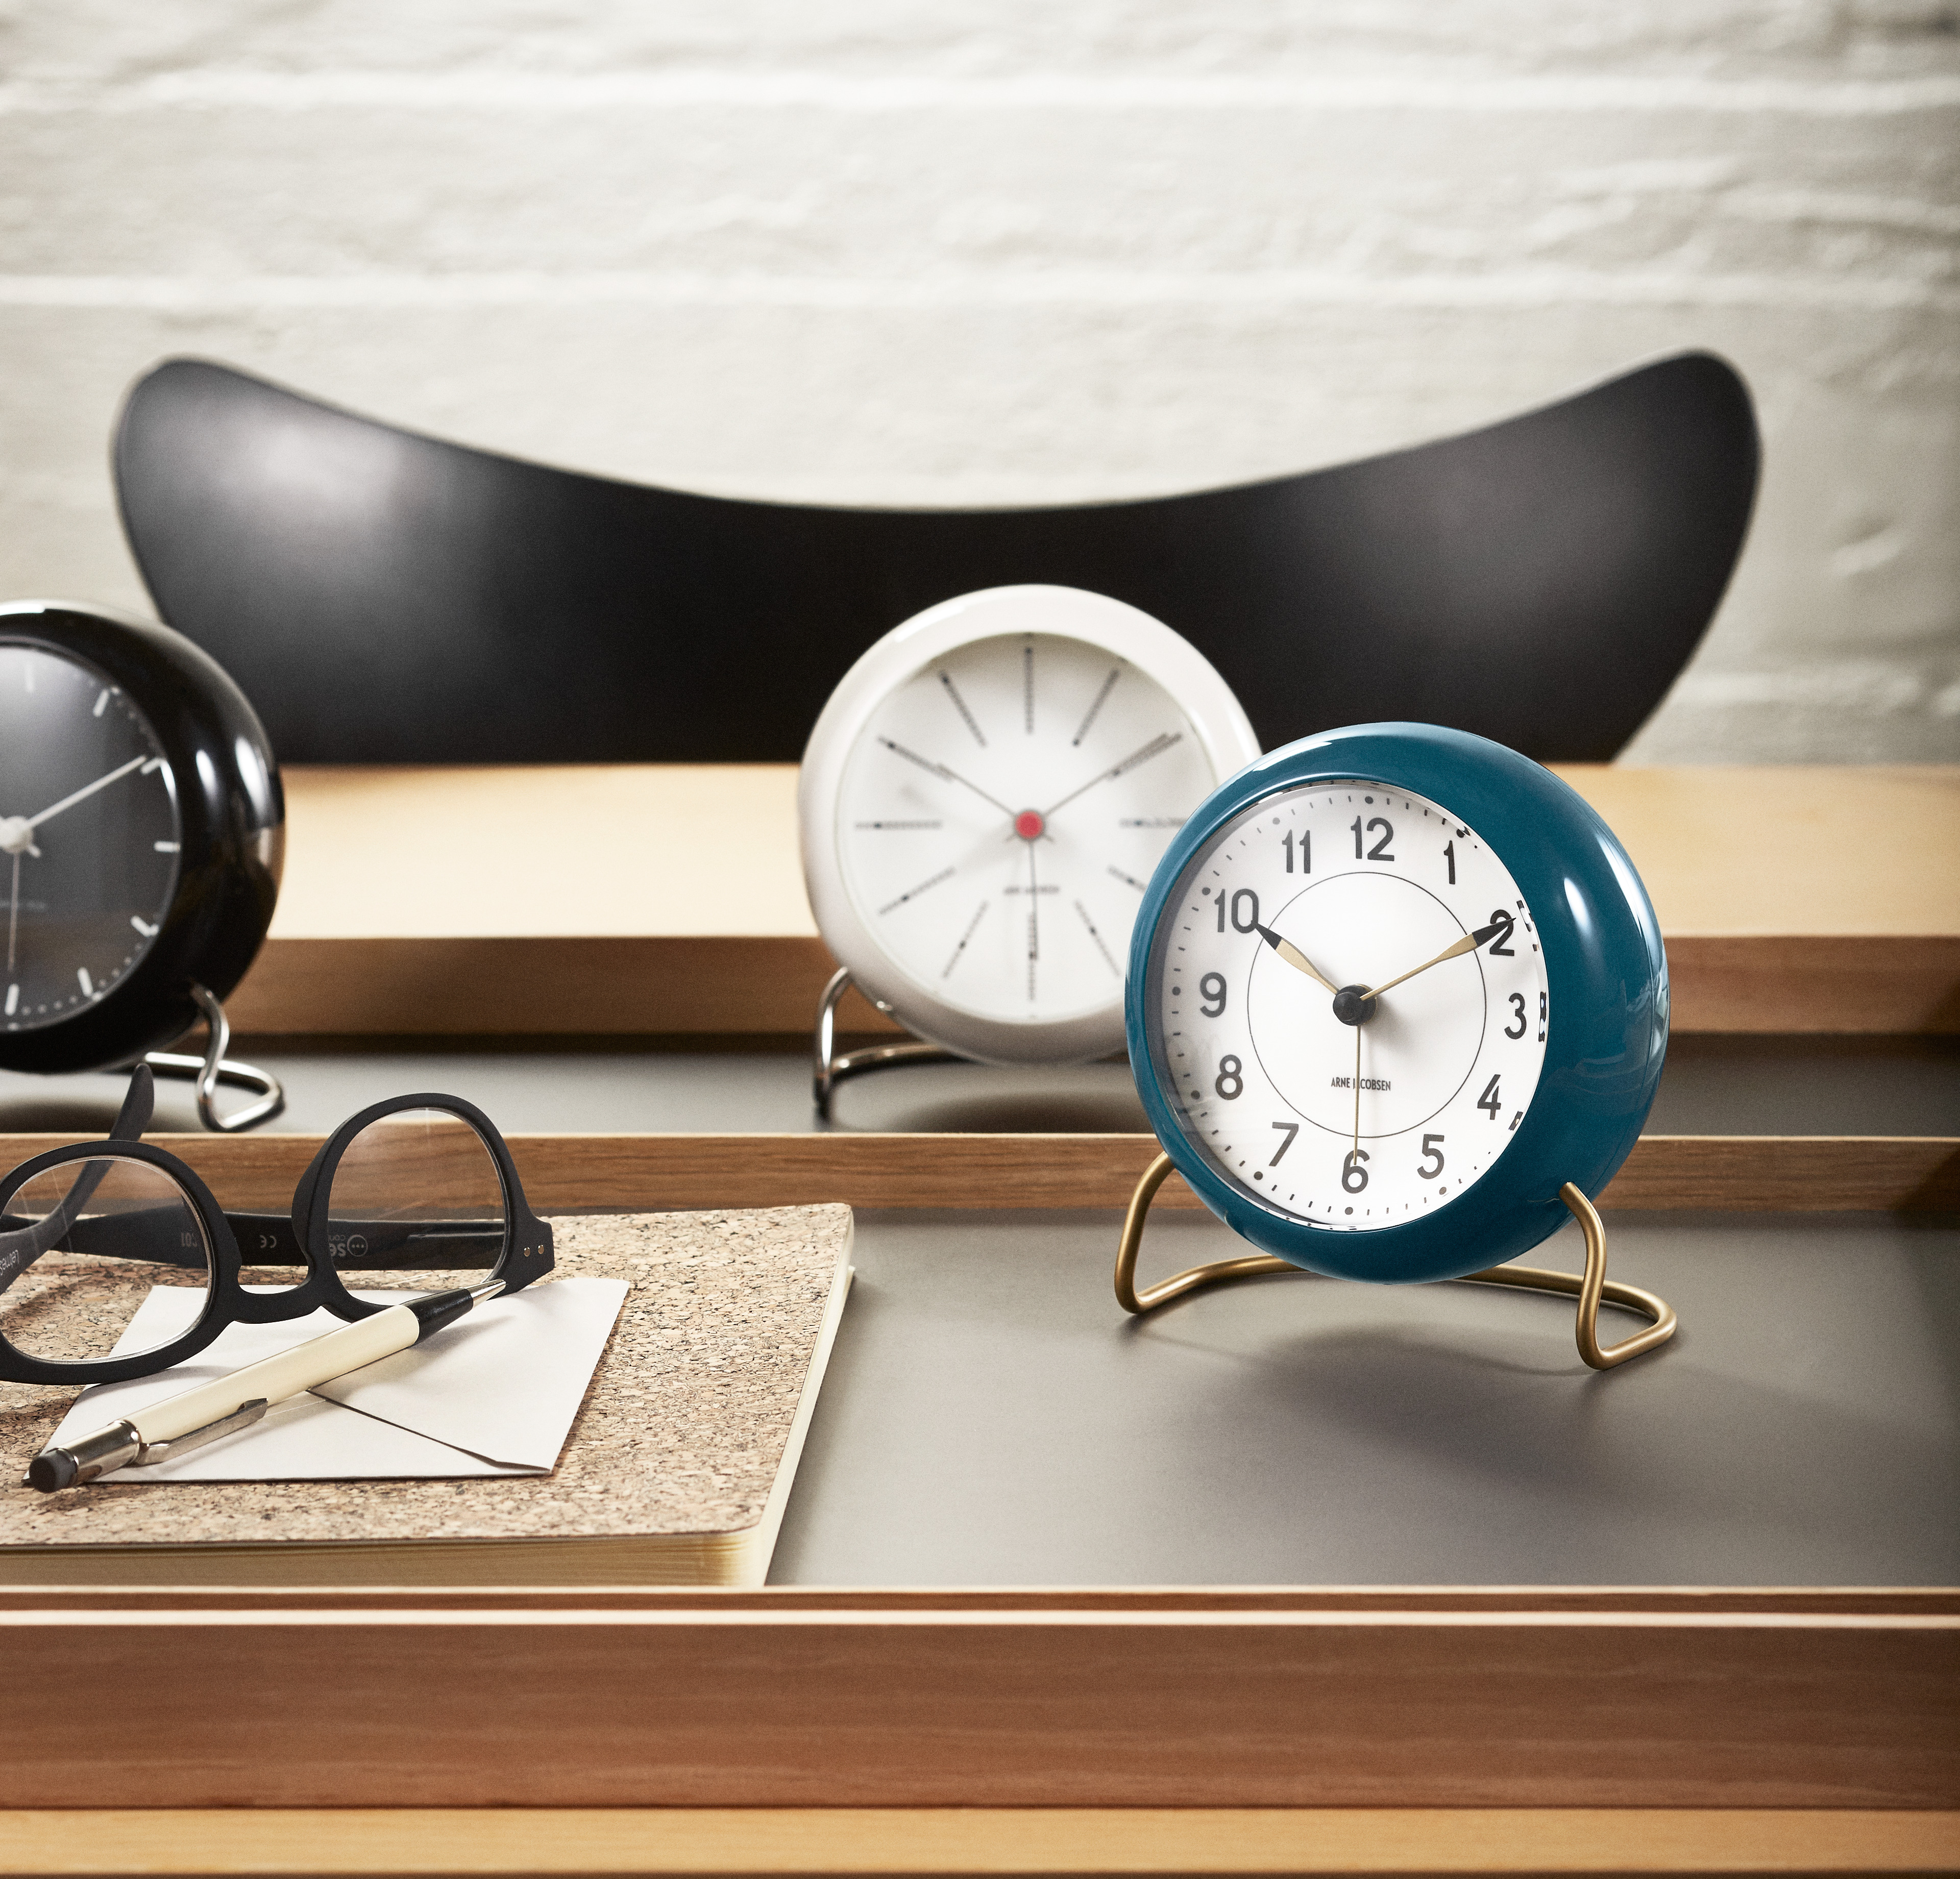 Arne Jacobsen Clocks - Full range of Arne Jacobsen watches